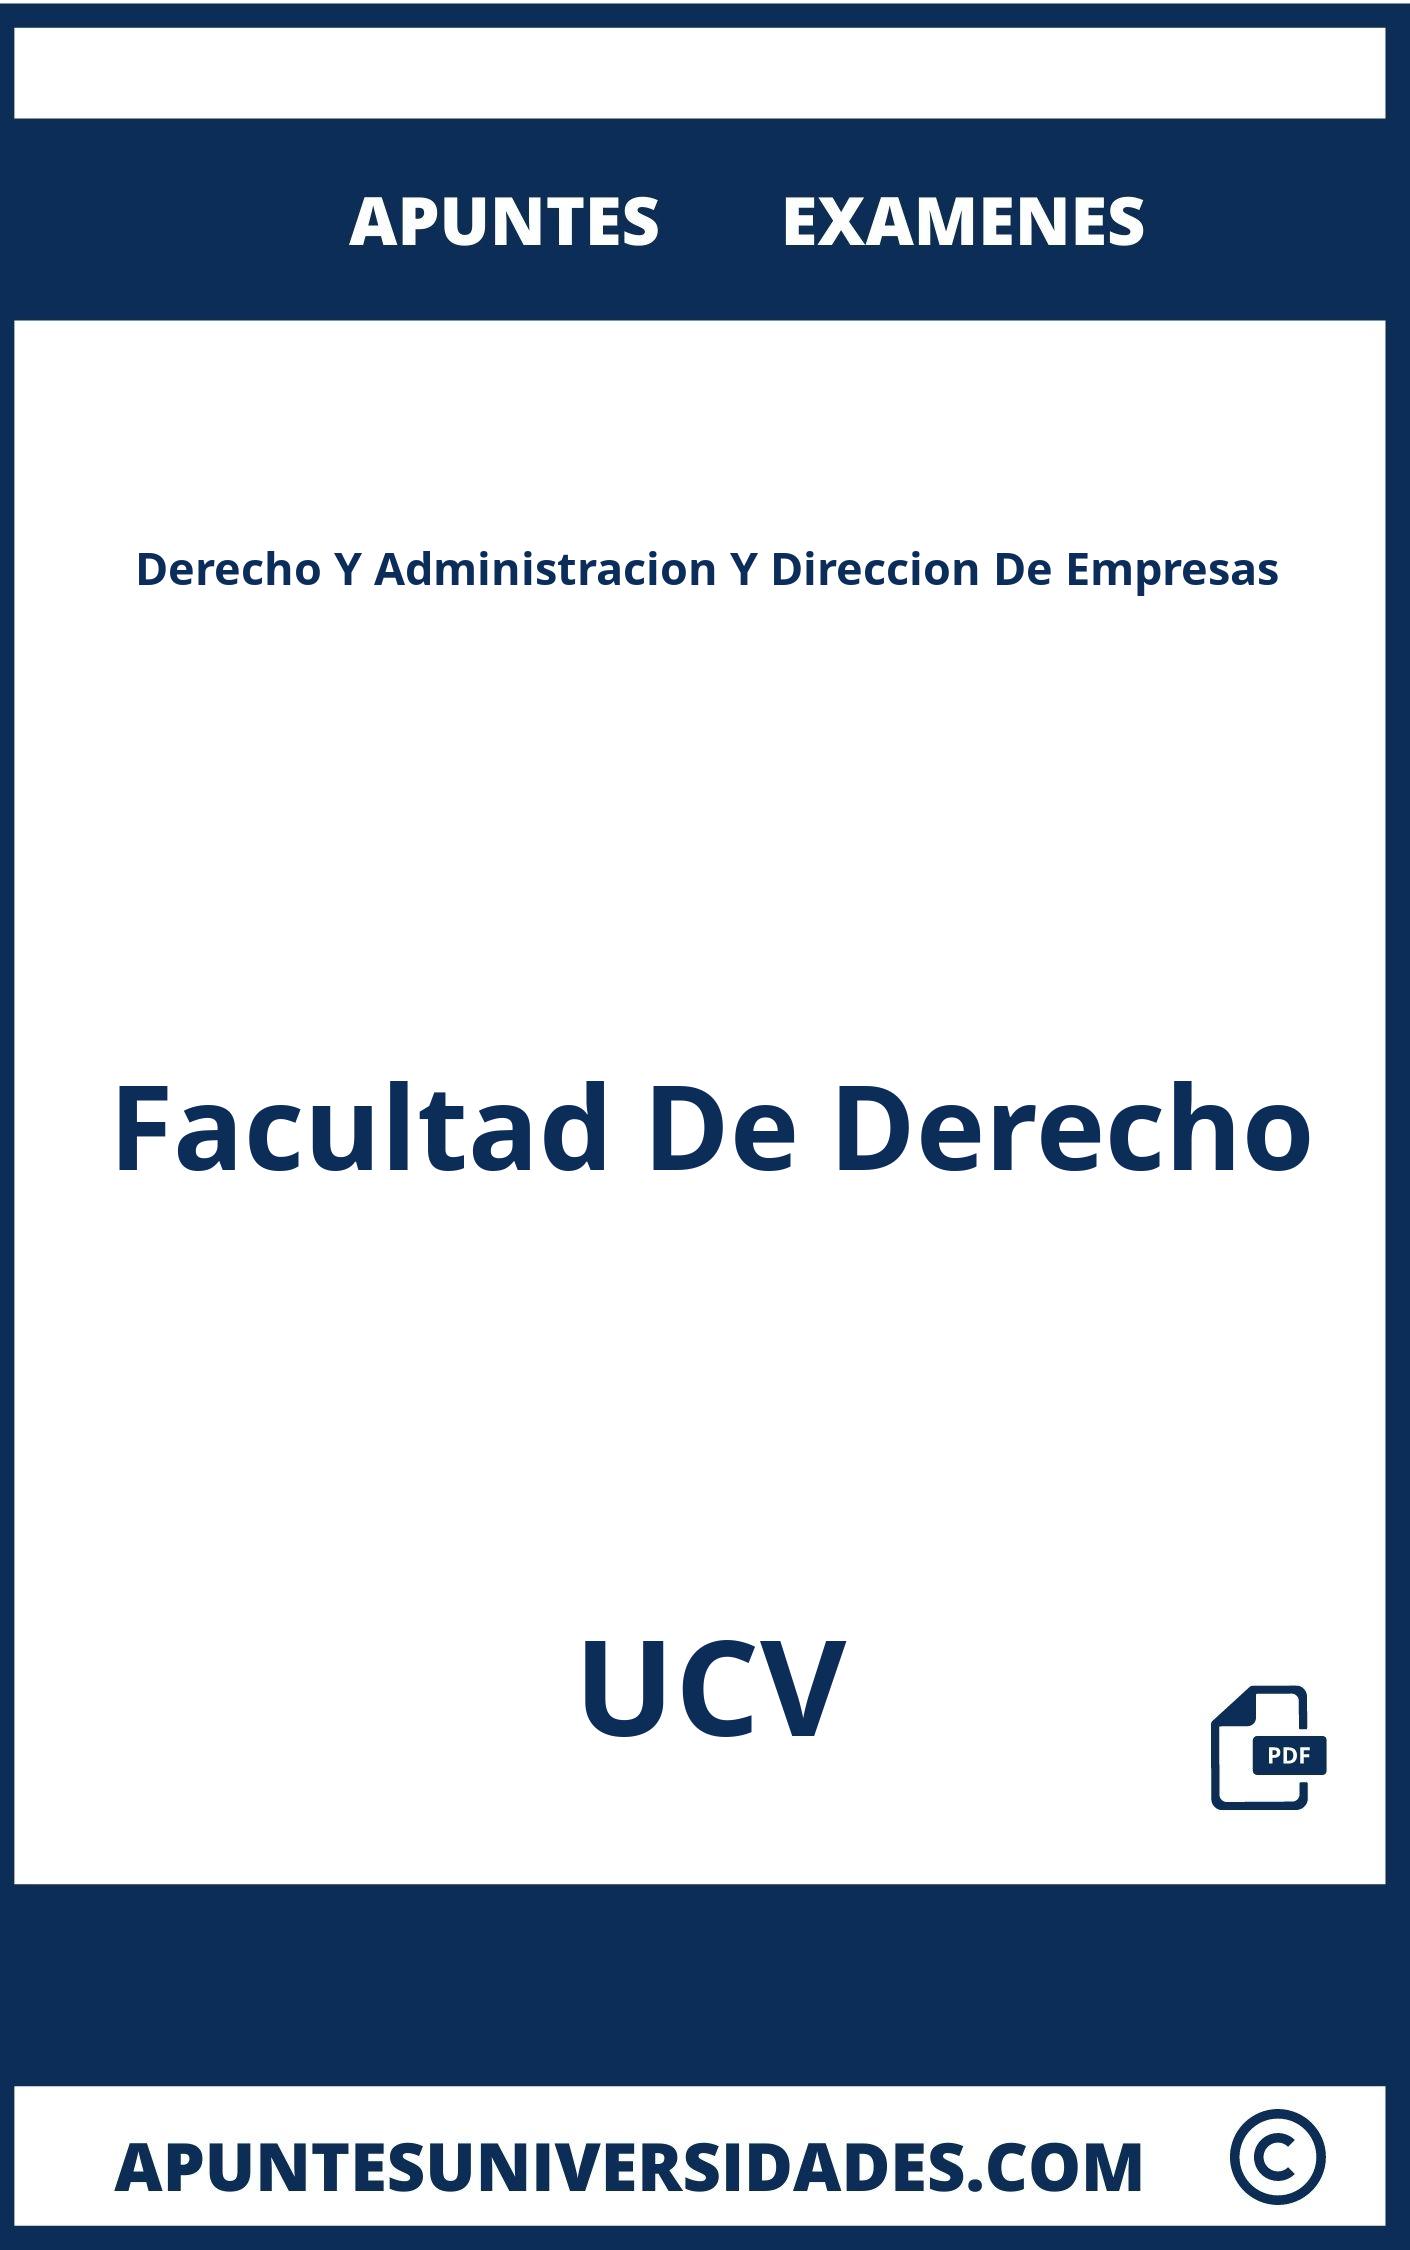 Apuntes y Examenes Derecho Y Administracion Y Direccion De Empresas UCV